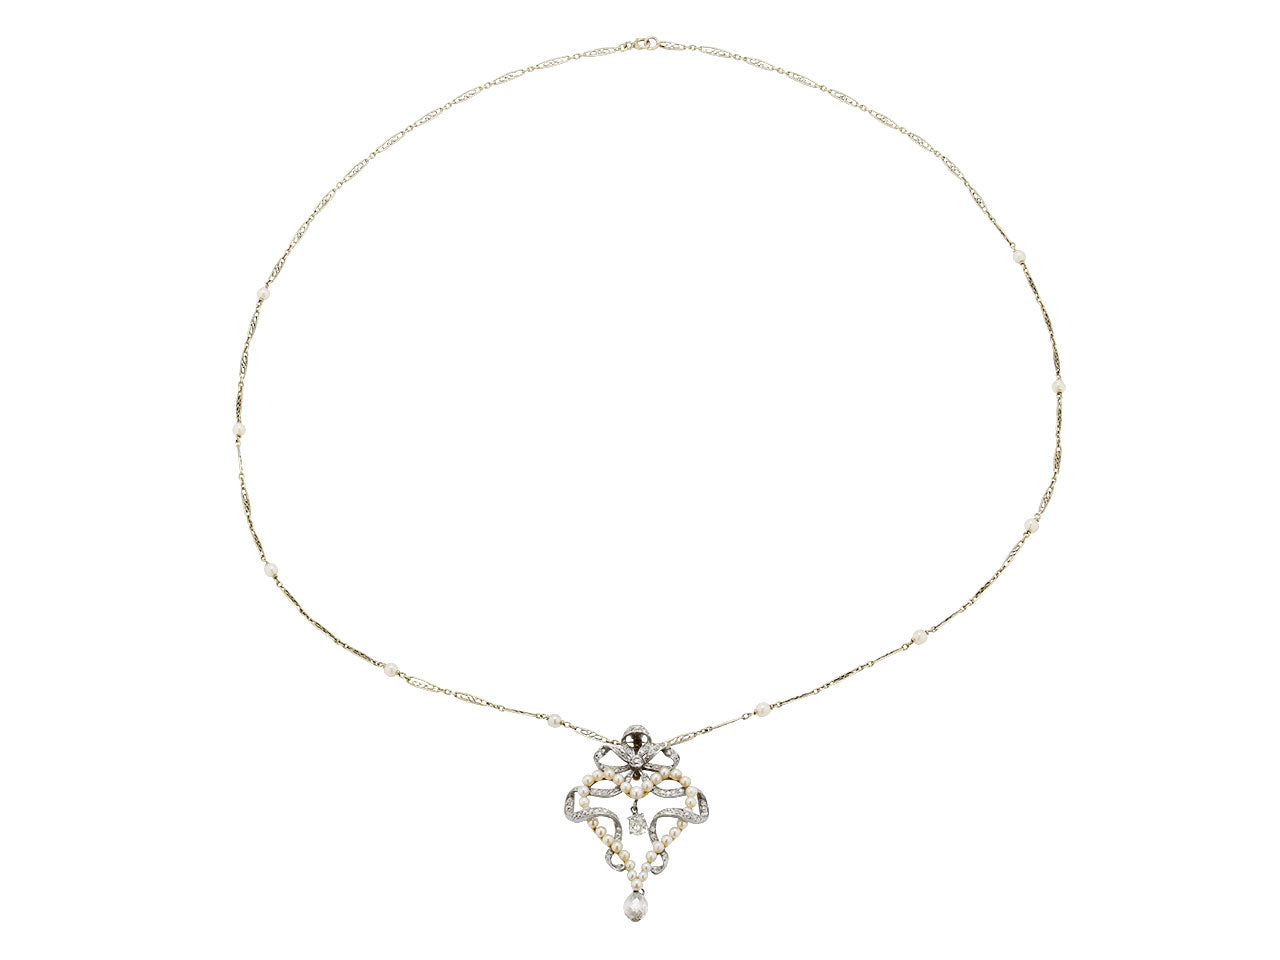 Antique Belle Époque Diamond and Pearl Pendant in Platinum over Gold